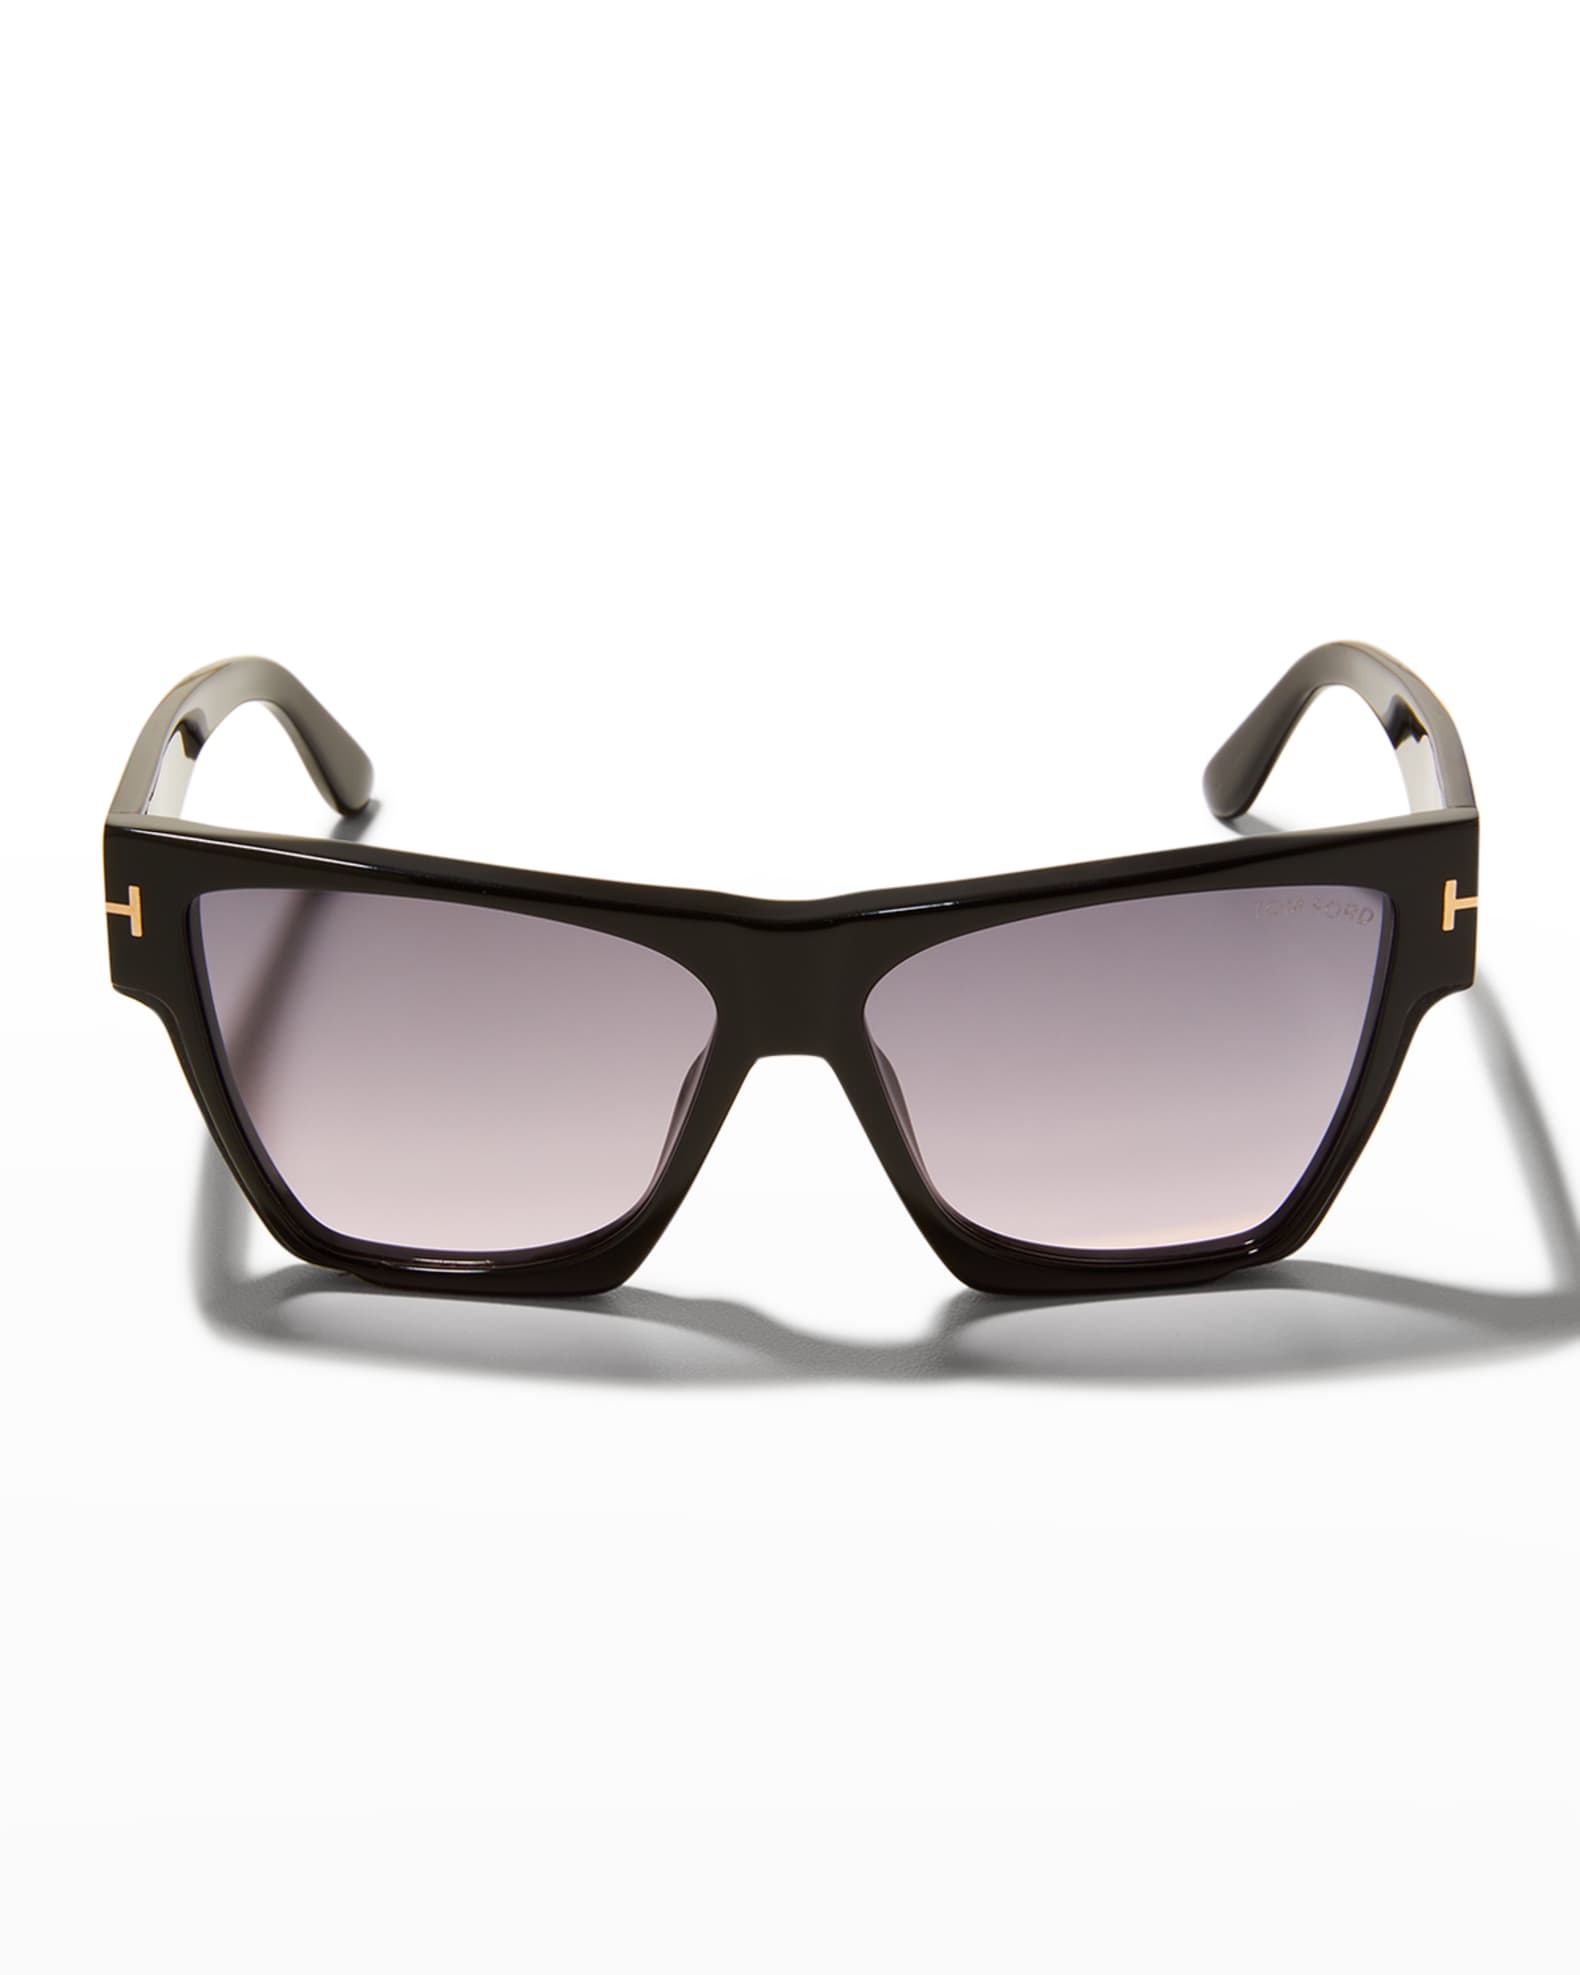 Tom Ford Dove Square Acetate Sunglasses Neiman Marcus